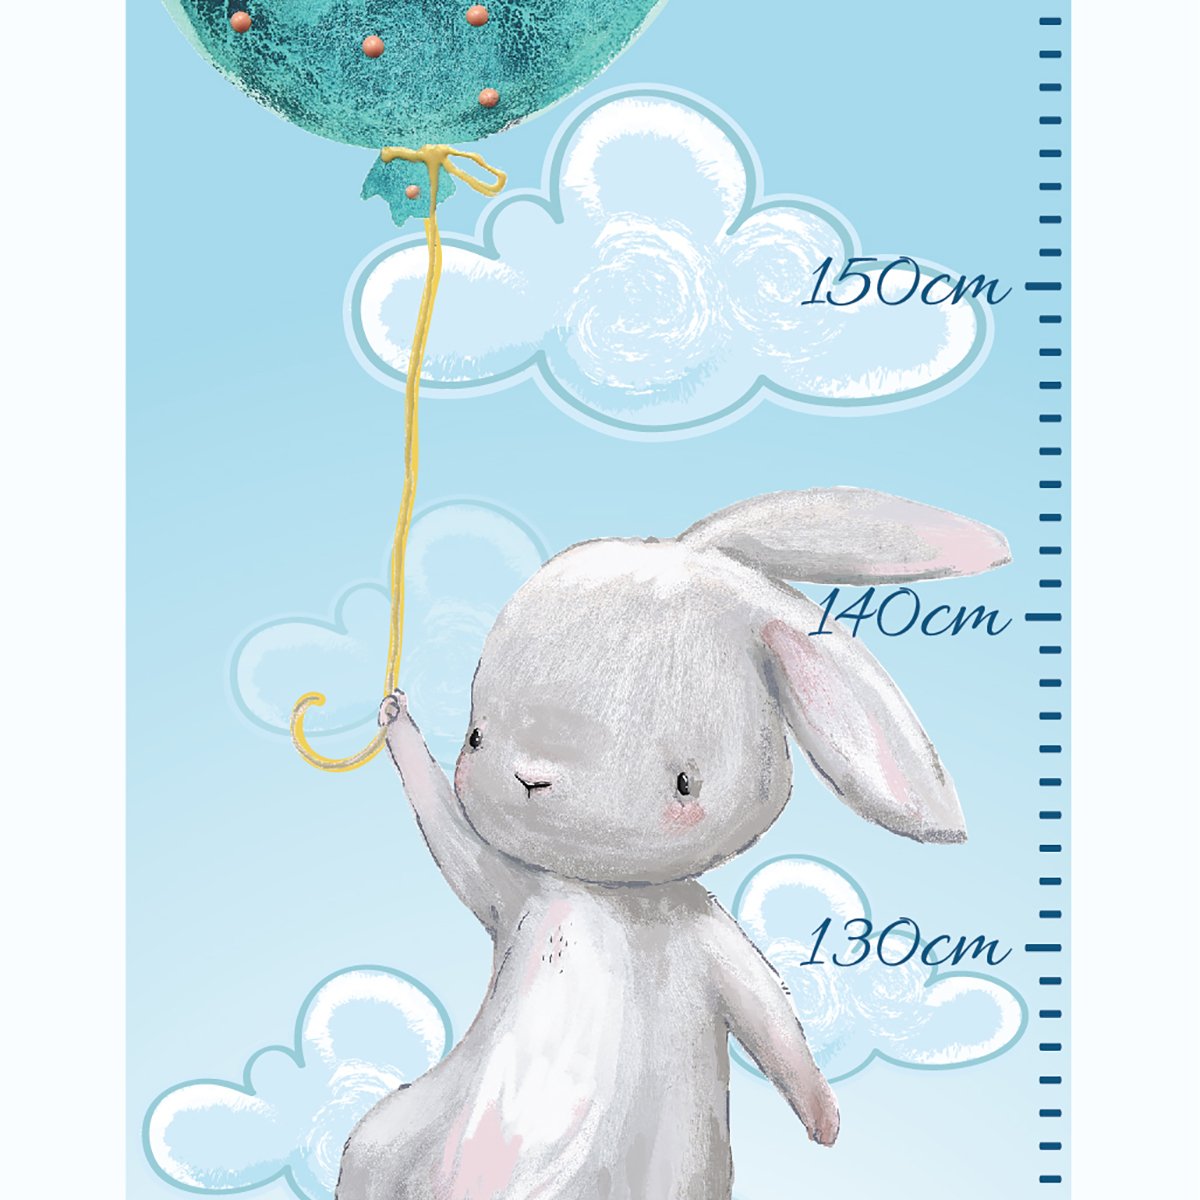 Naklejka ścienna miarka wzrostu - miętowe balony i króliczki#kolor_mietowy